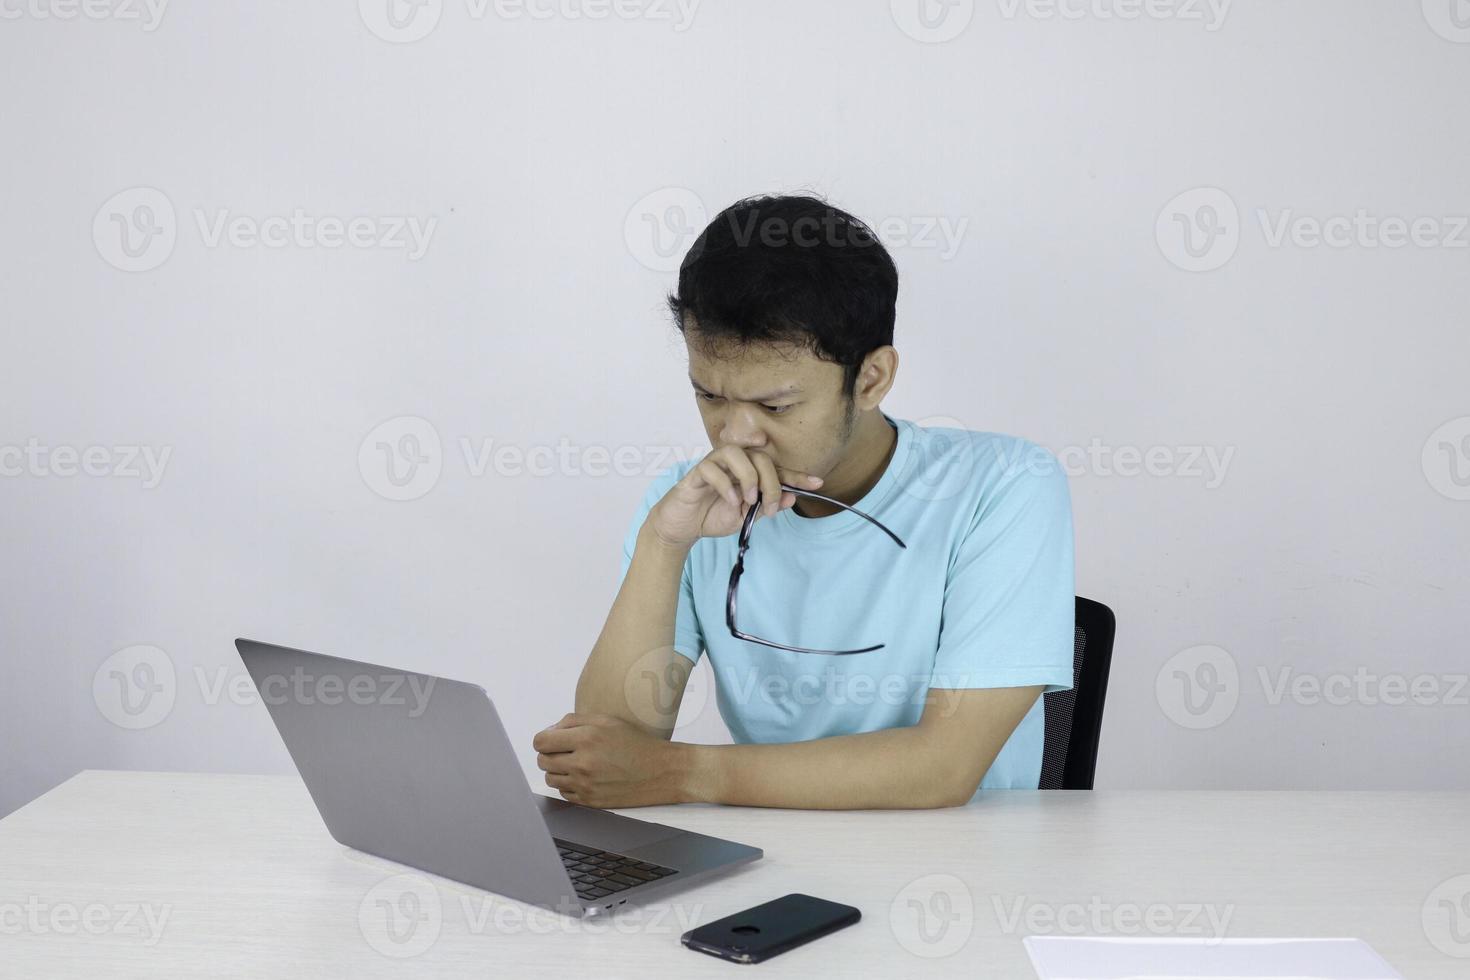 il giovane asiatico è serio e si concentra quando lavora su un laptop sul tavolo. uomo indonesiano che indossa una camicia blu. foto